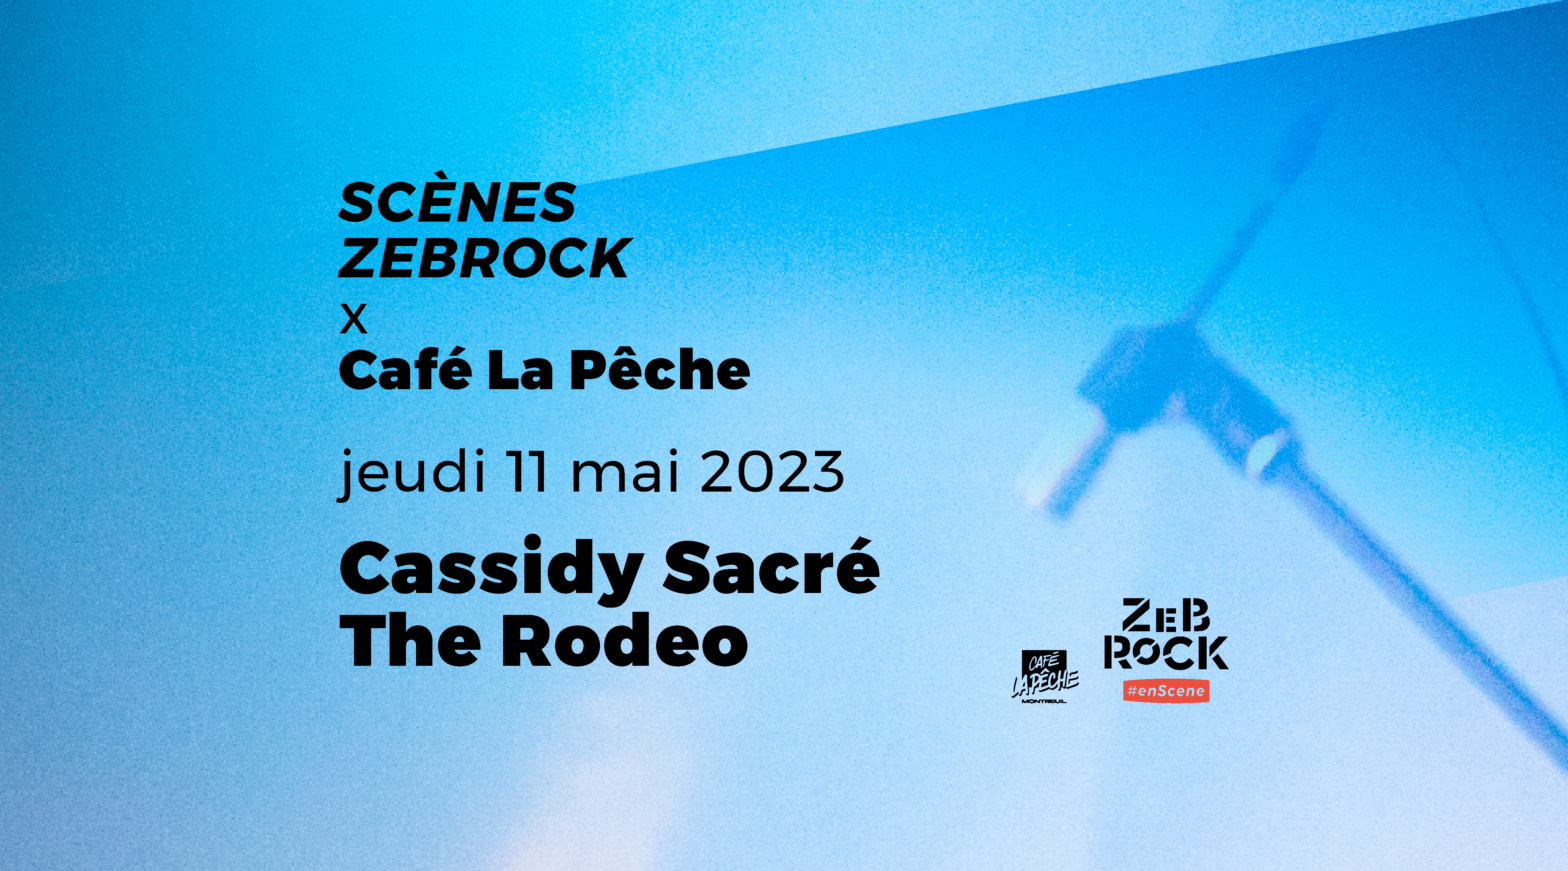 Scènes Zebrock x Café La Pêche | The Rodeo + Cassidy Sacré | 11 mai 2023